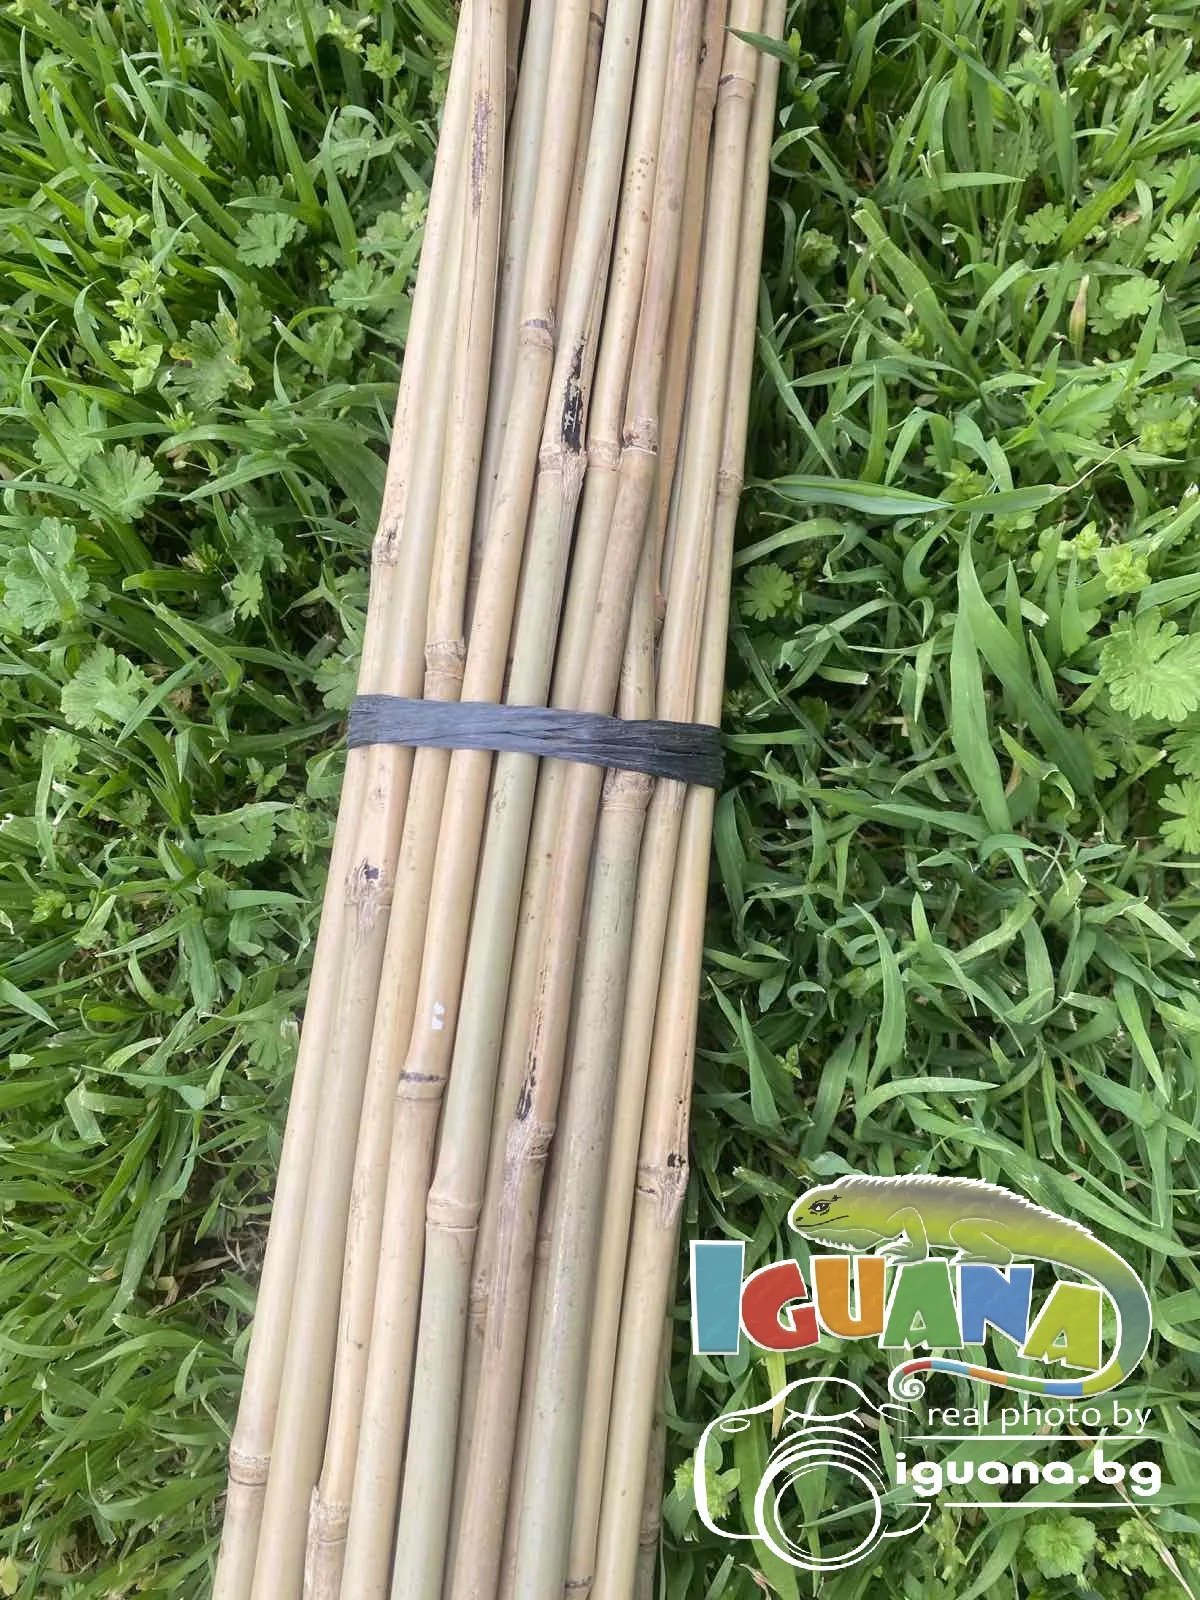 ПРОМО комплект 50 броя колчета от бамбук 210см Колчета за домати от естествен бамбук 210см кол, бамбукови пръчки 2,10м 9